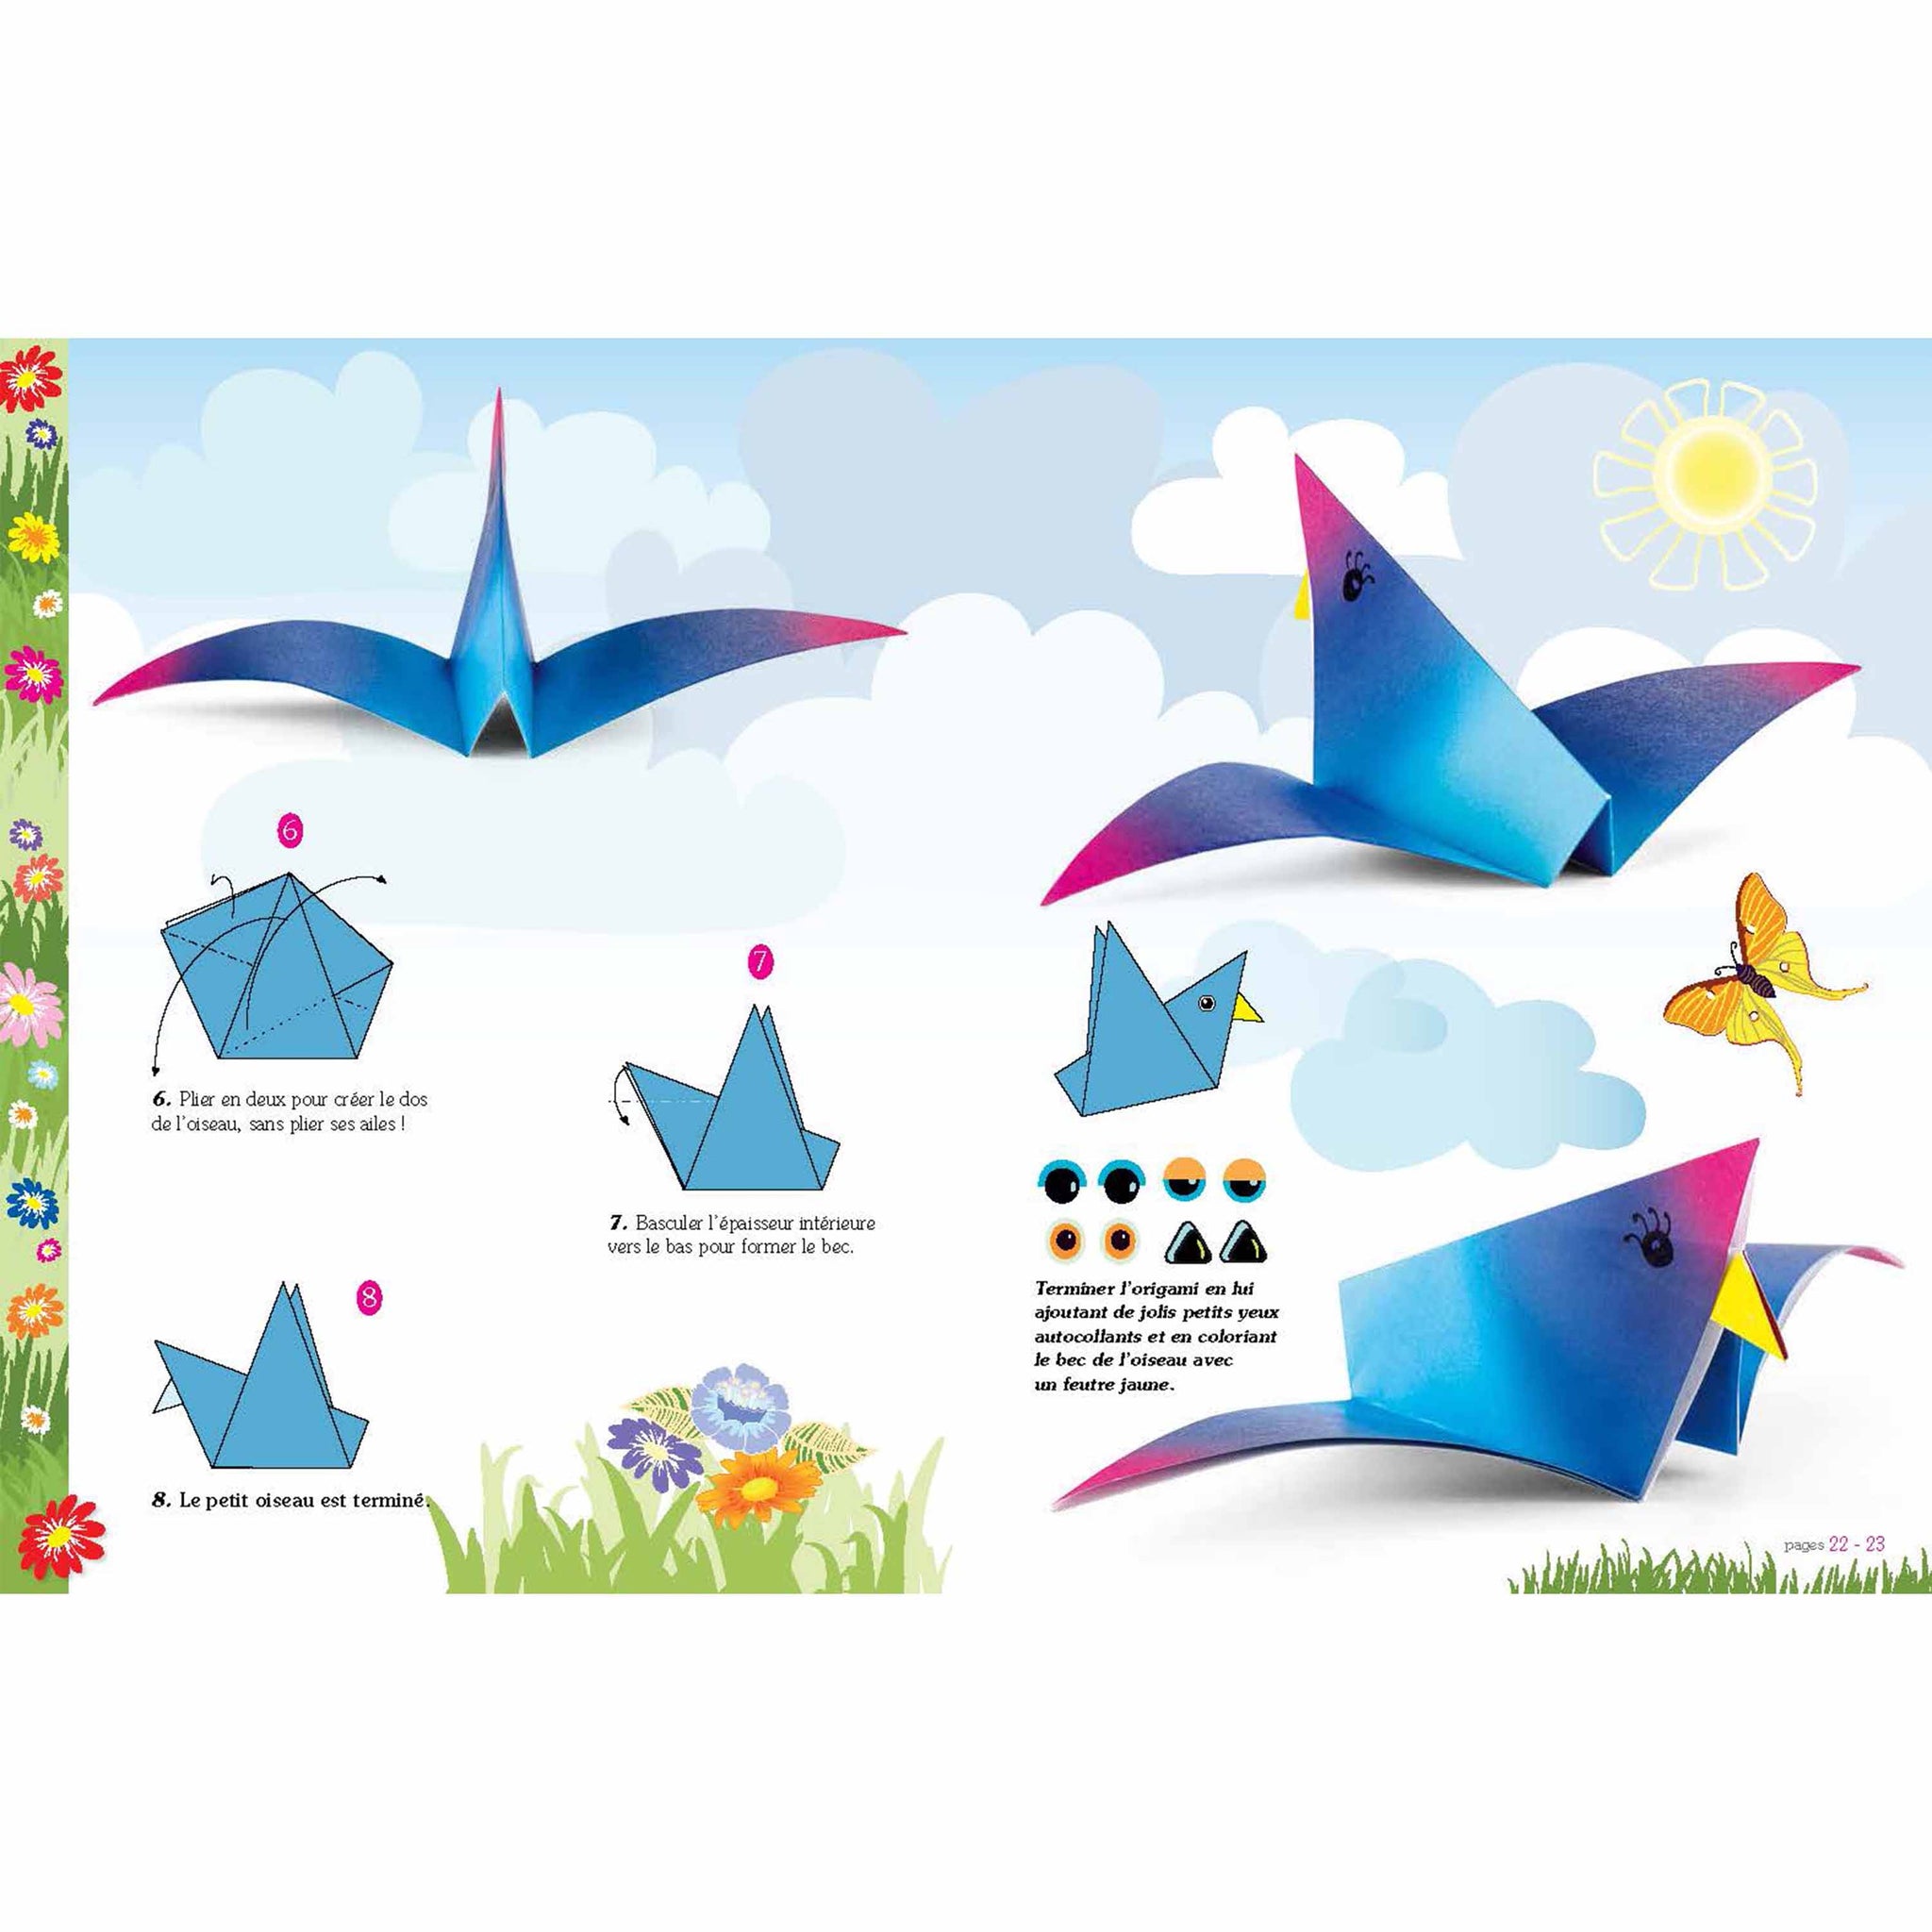 Le jardin en origami - Facile et pour les enfants